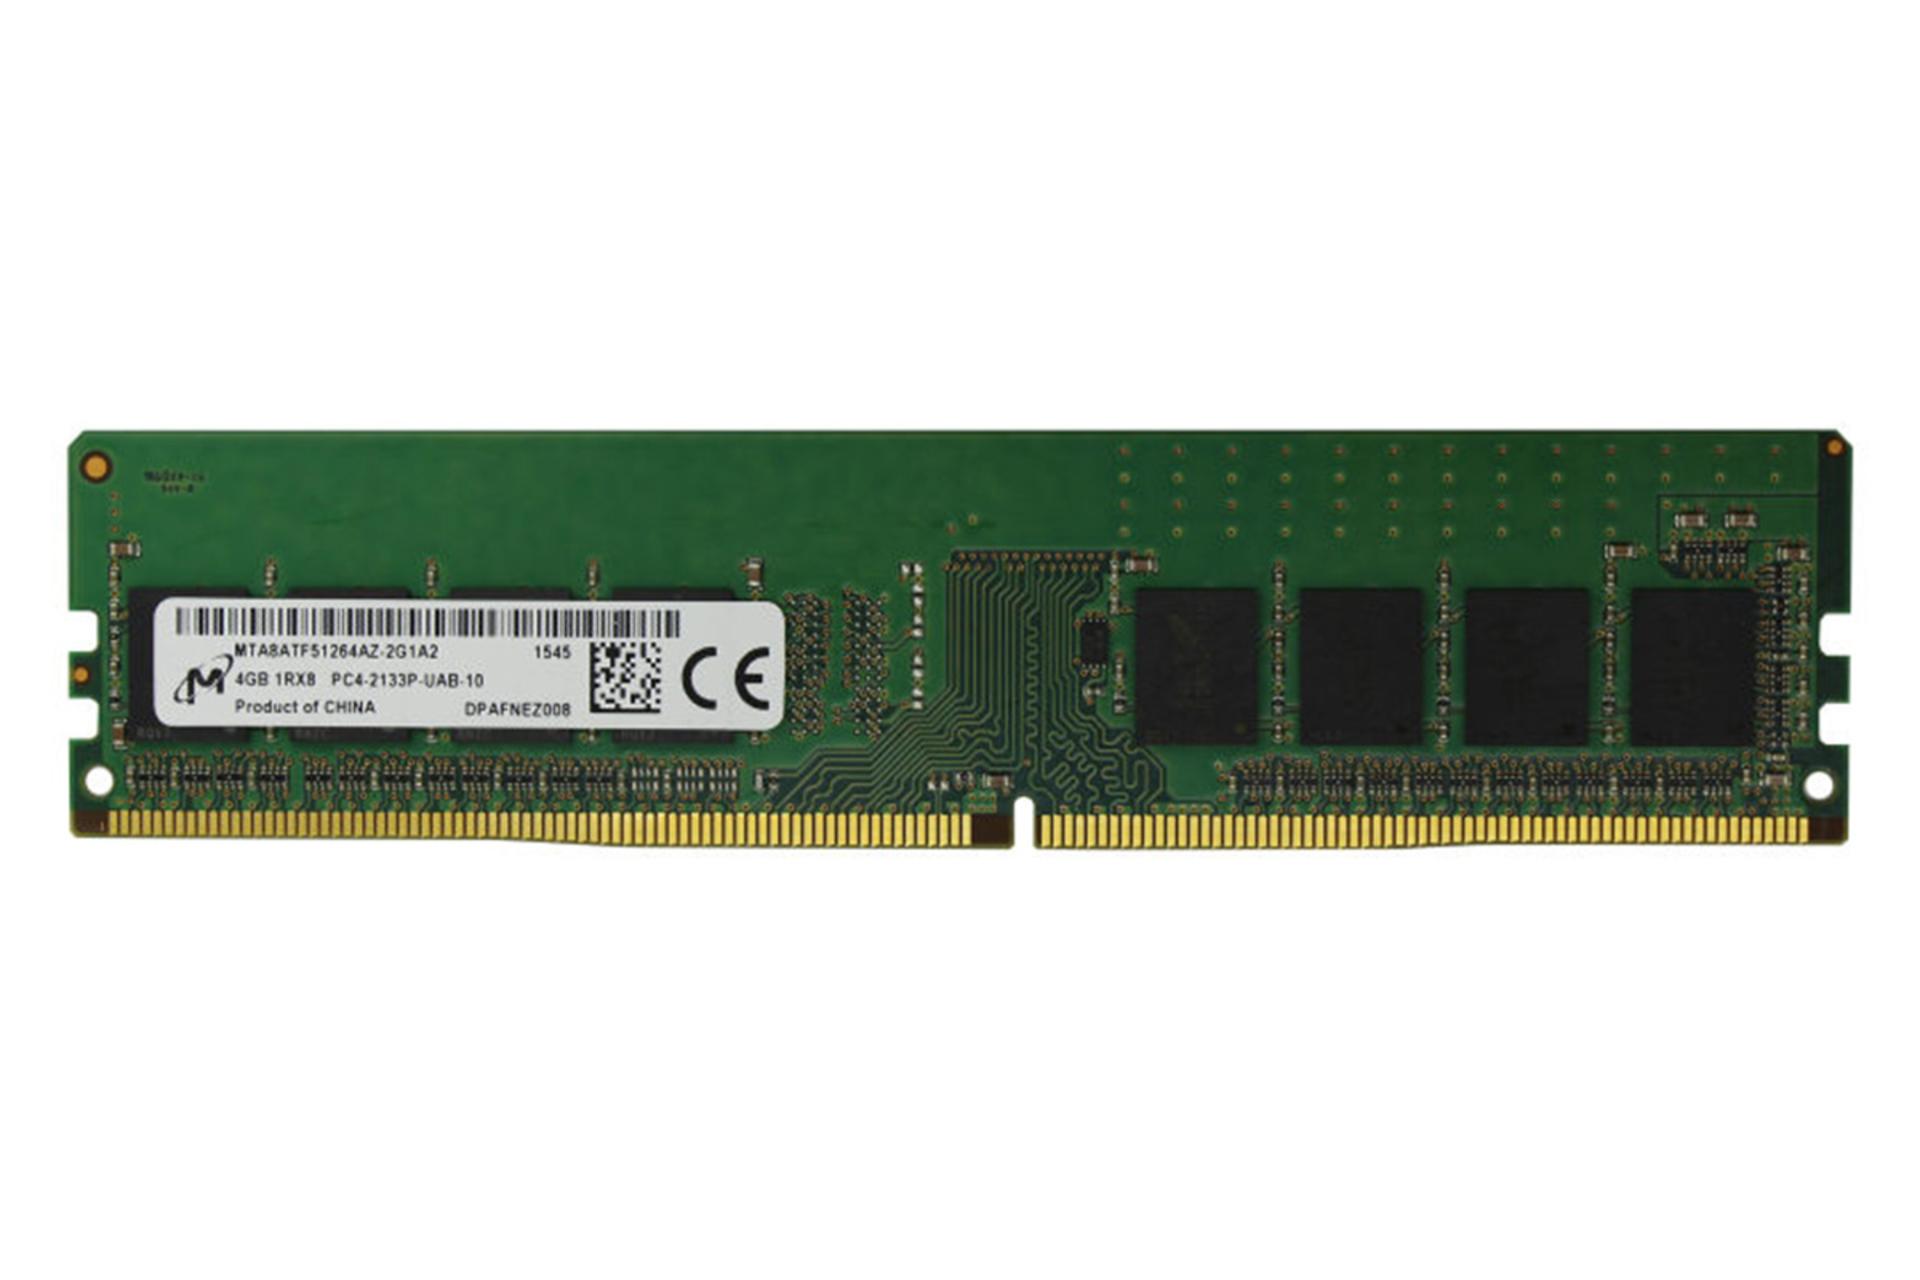 رم مایکرون Micron MTA8ATF51264AZ-2G1A2 4GB DDR4-2133 CL15